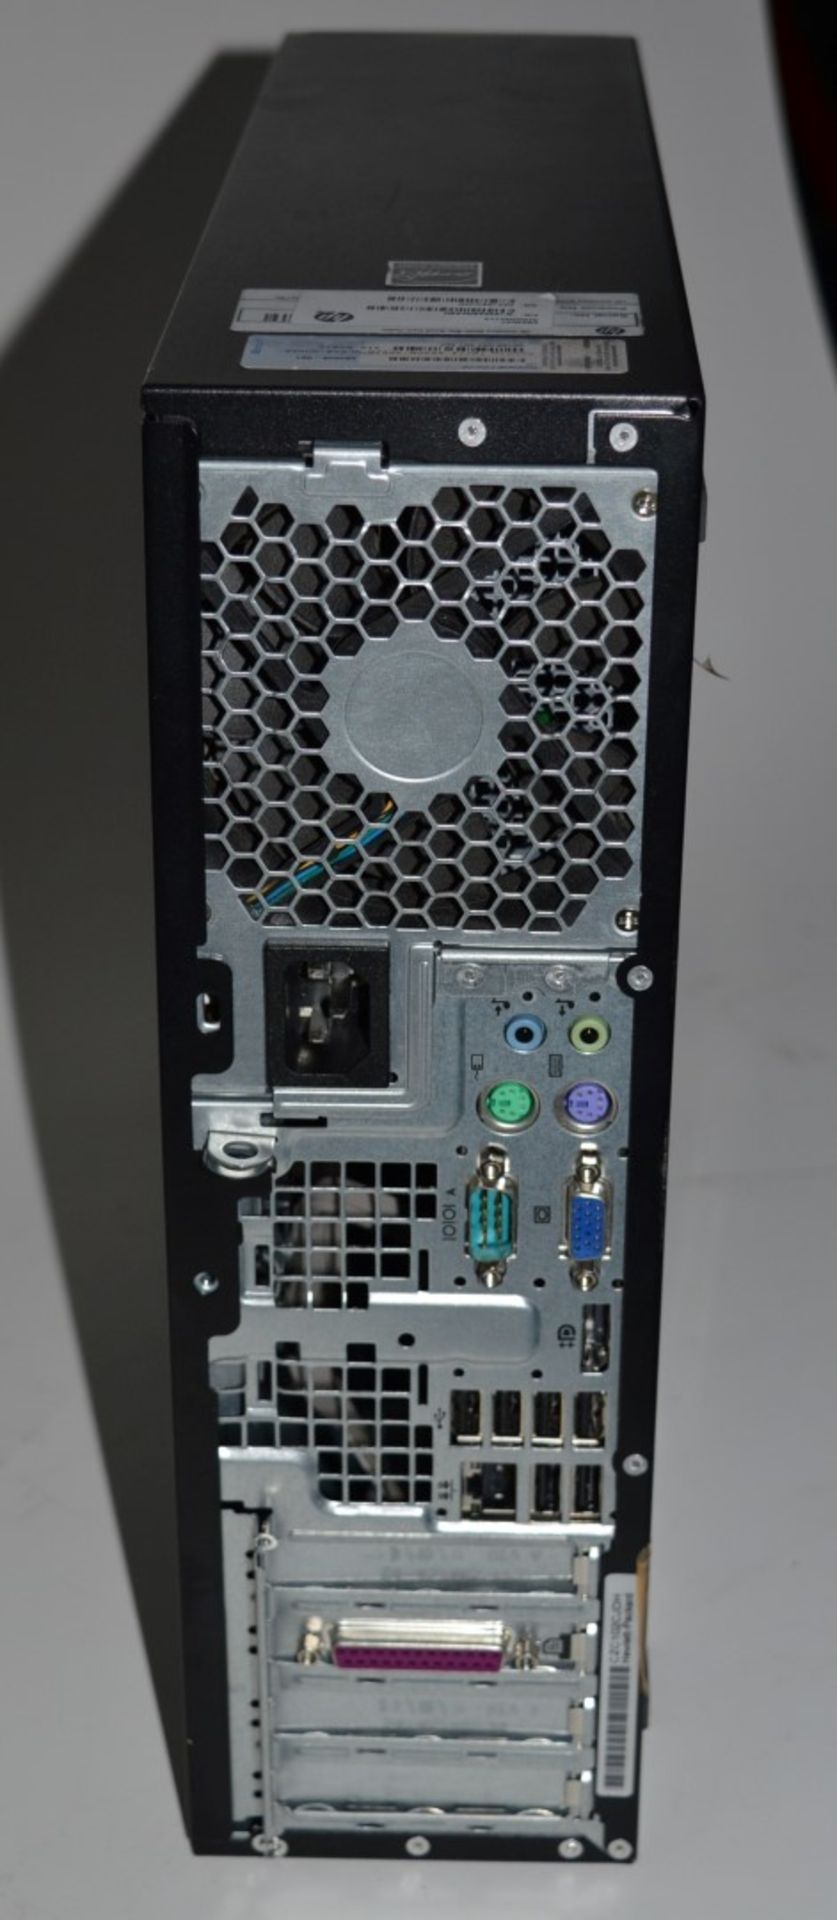 1 x Hewlett Packard 8000 Elite Small Form Factor Desktop Computer - Features an Intel Core2 3ghz - Image 5 of 5